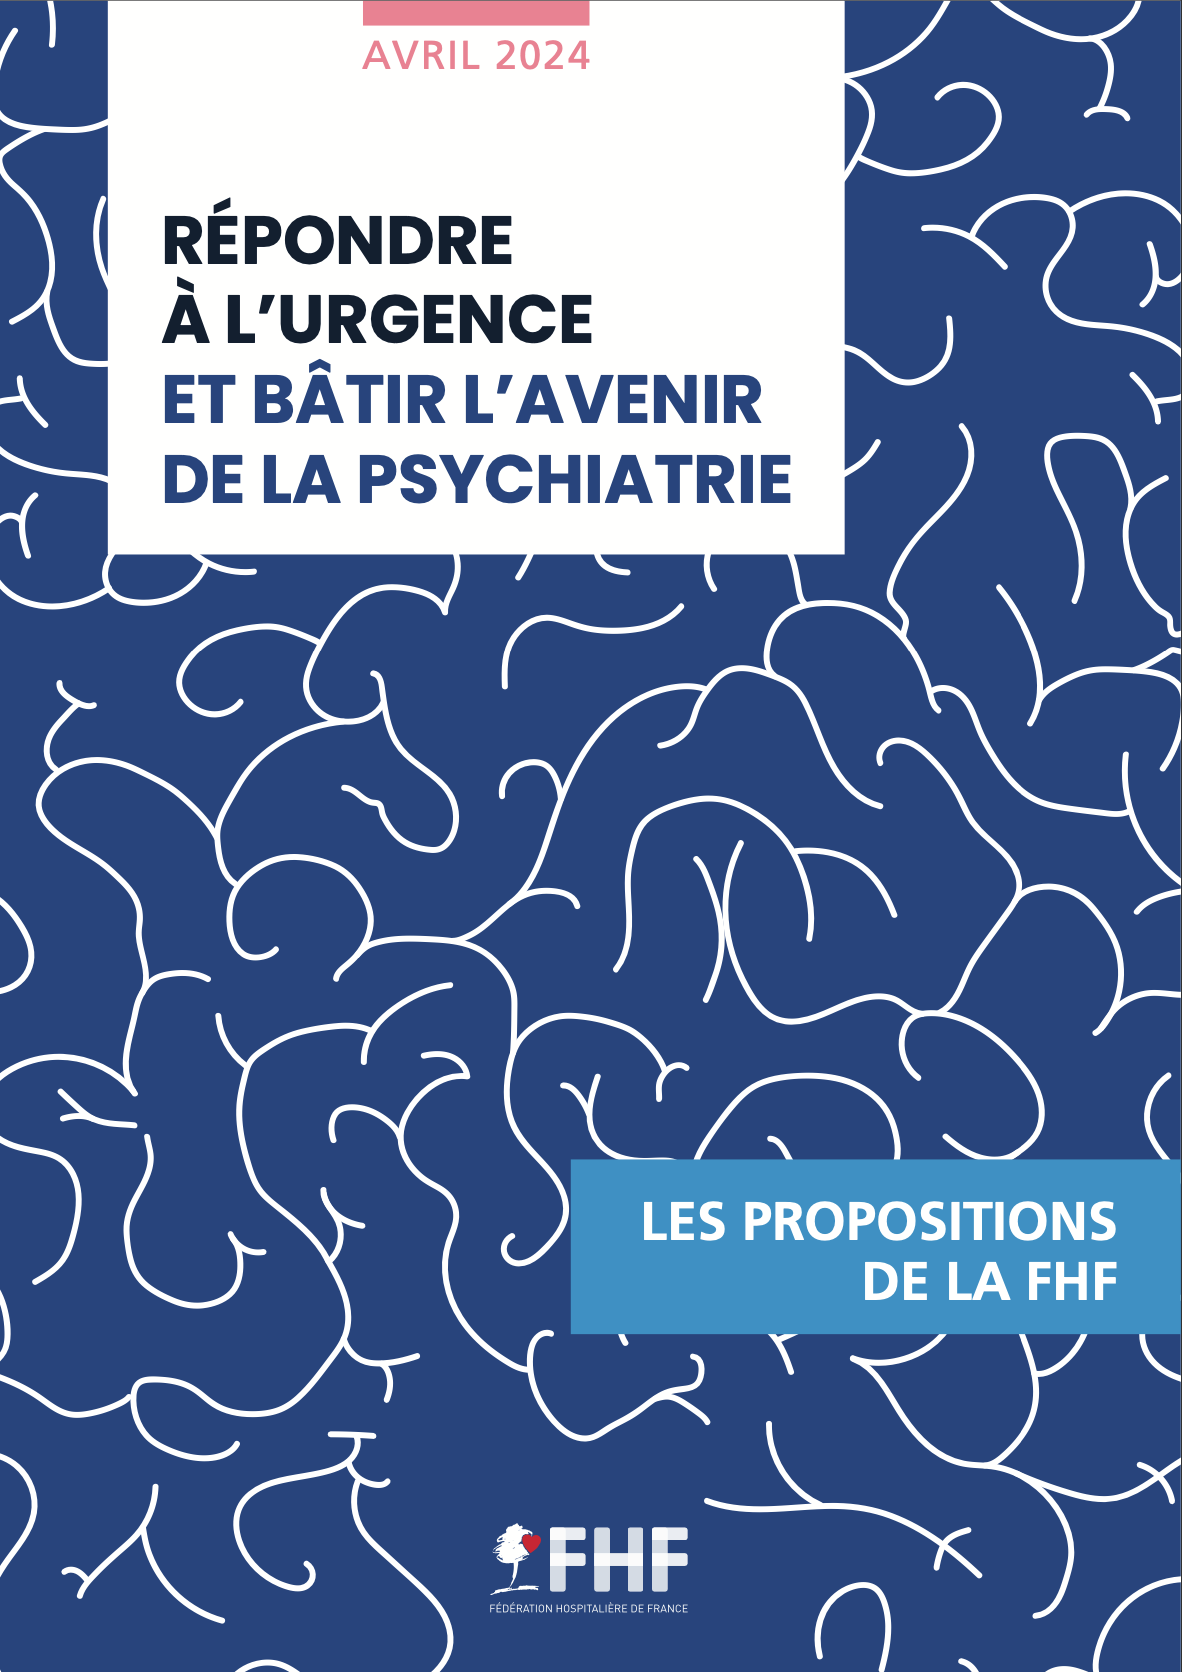 Répondre à l’urgence et bâtir l’avenir de la psychiatrie : présentation des propositions de la FHF